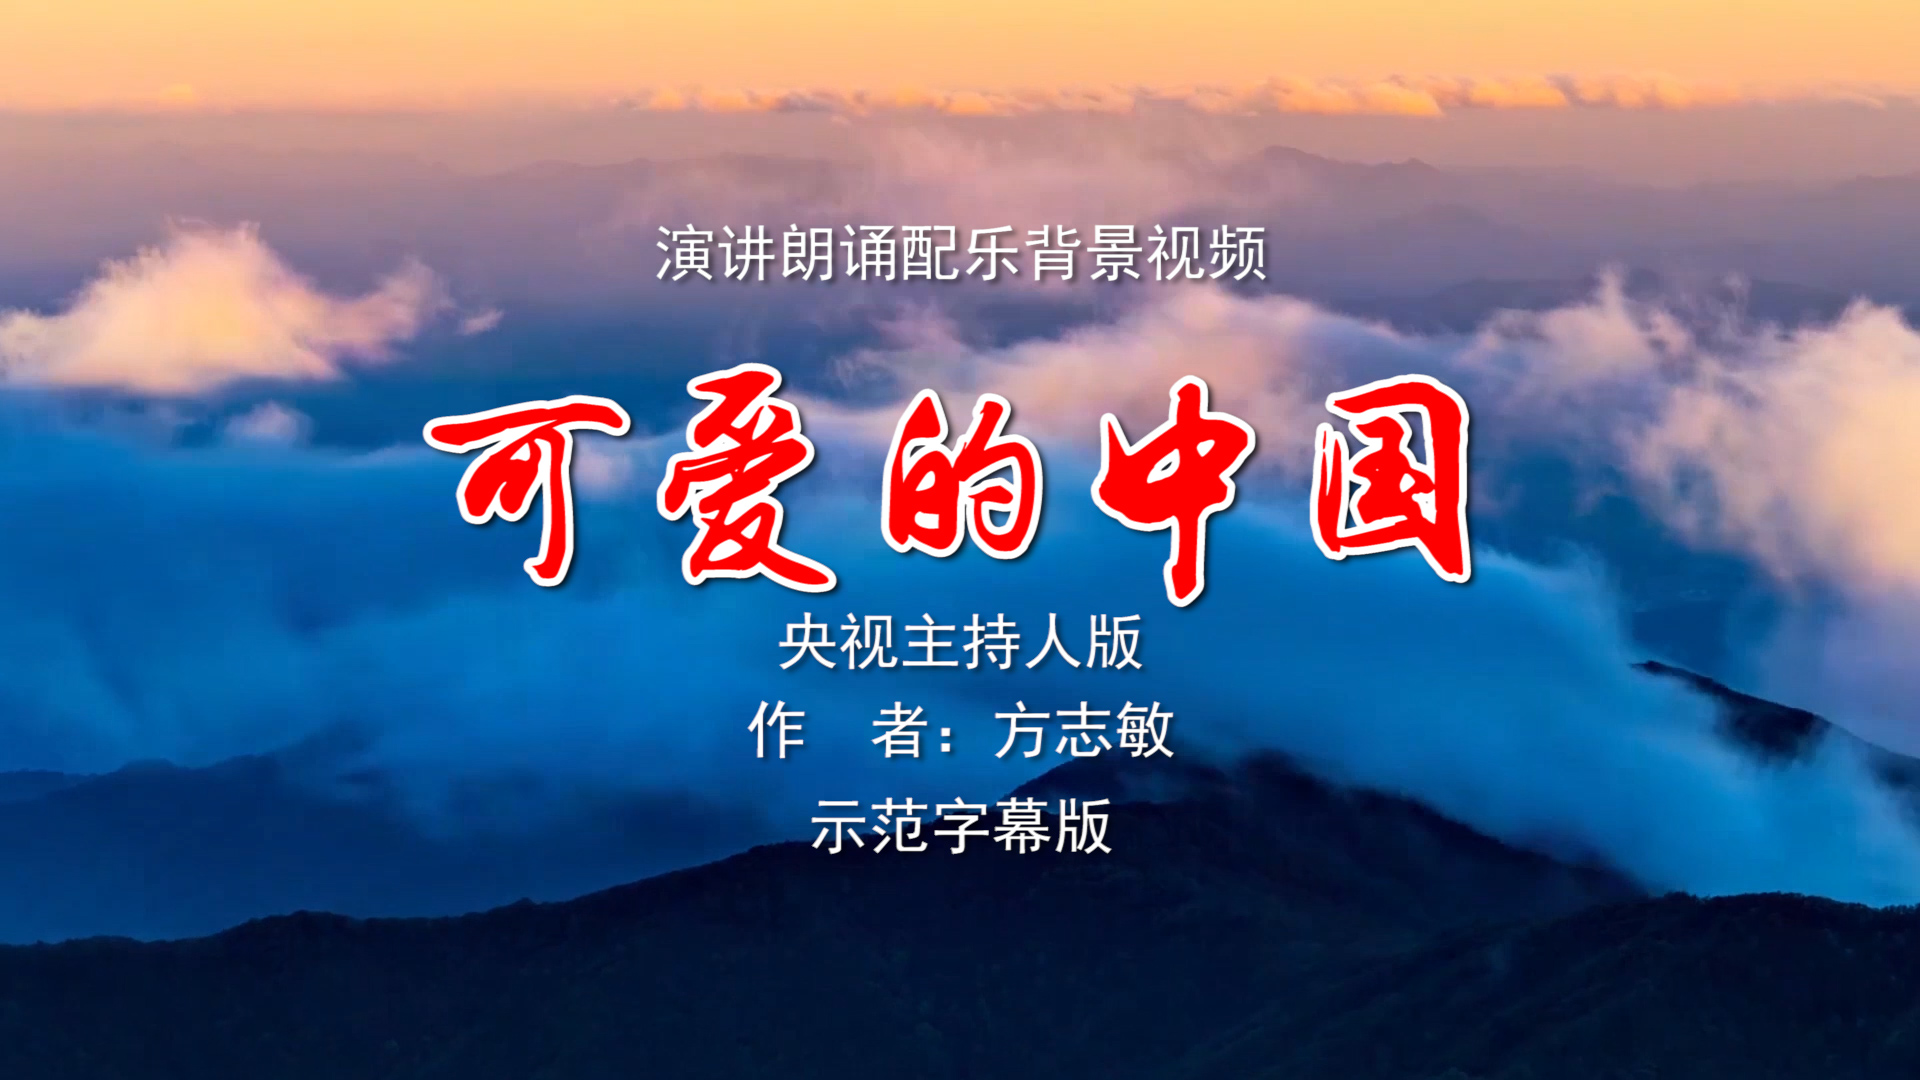 可爱的中国 央视主持人版诗歌朗诵配乐伴奏舞台演出LED背景大屏幕视频素材TV